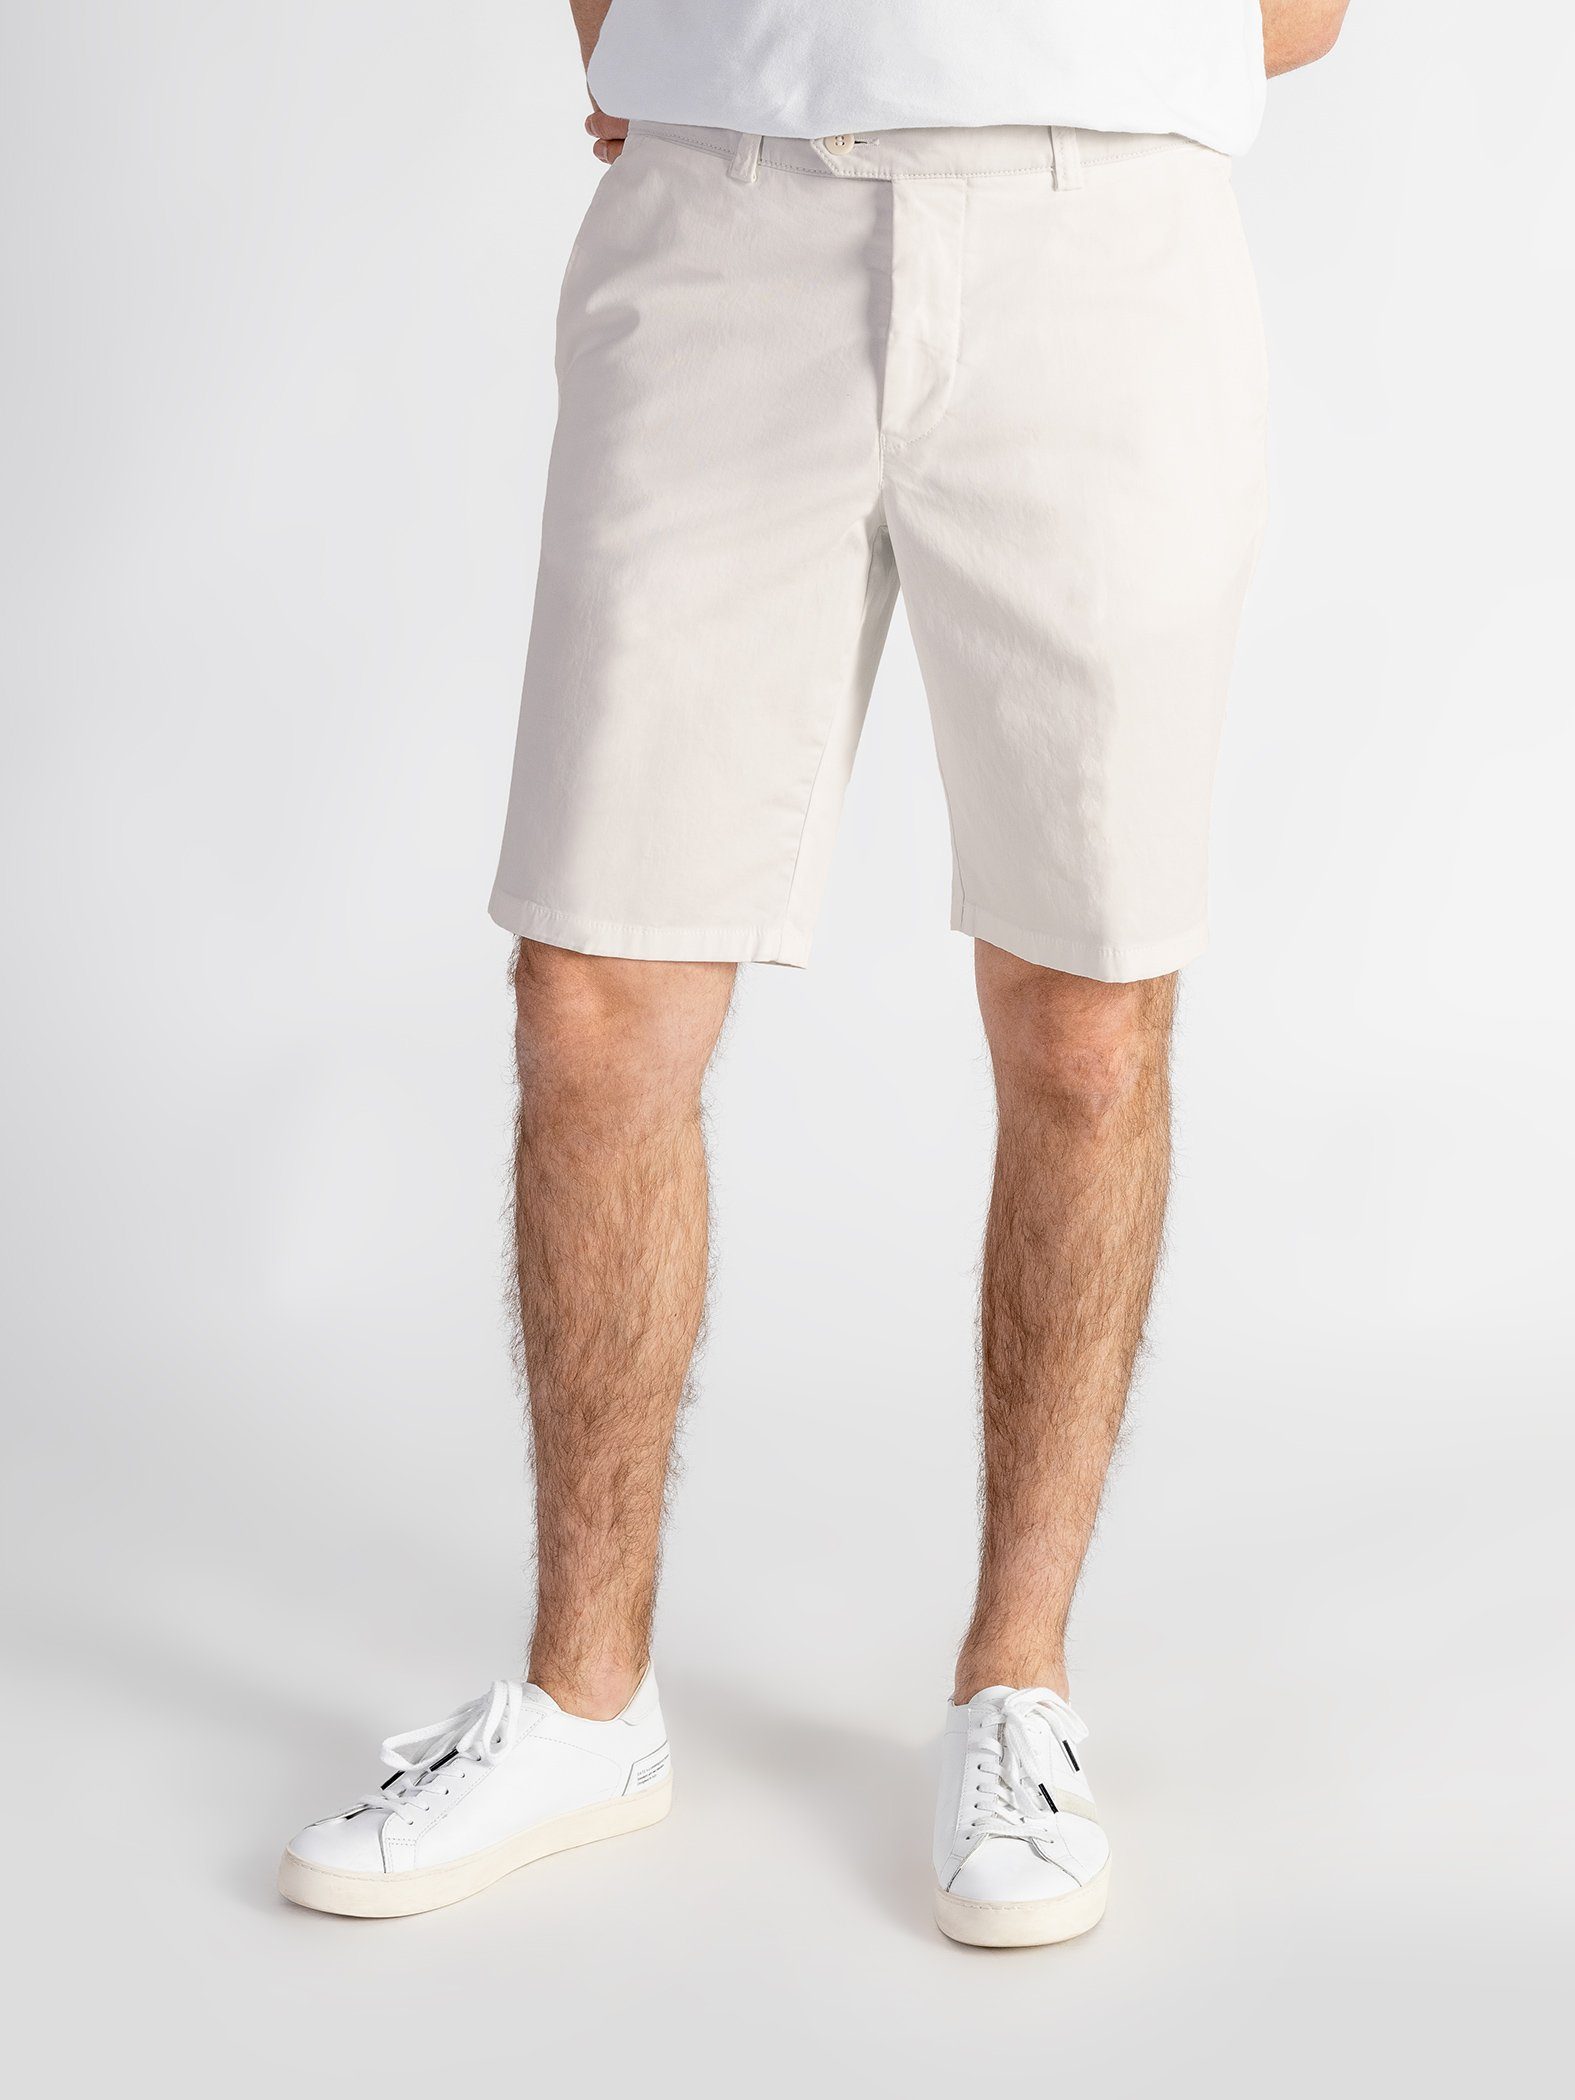 TwoMates Shorts Shorts mit elastischem Bund, Farbauswahl, GOTS-zertifiziert hellbeige | Sportshorts